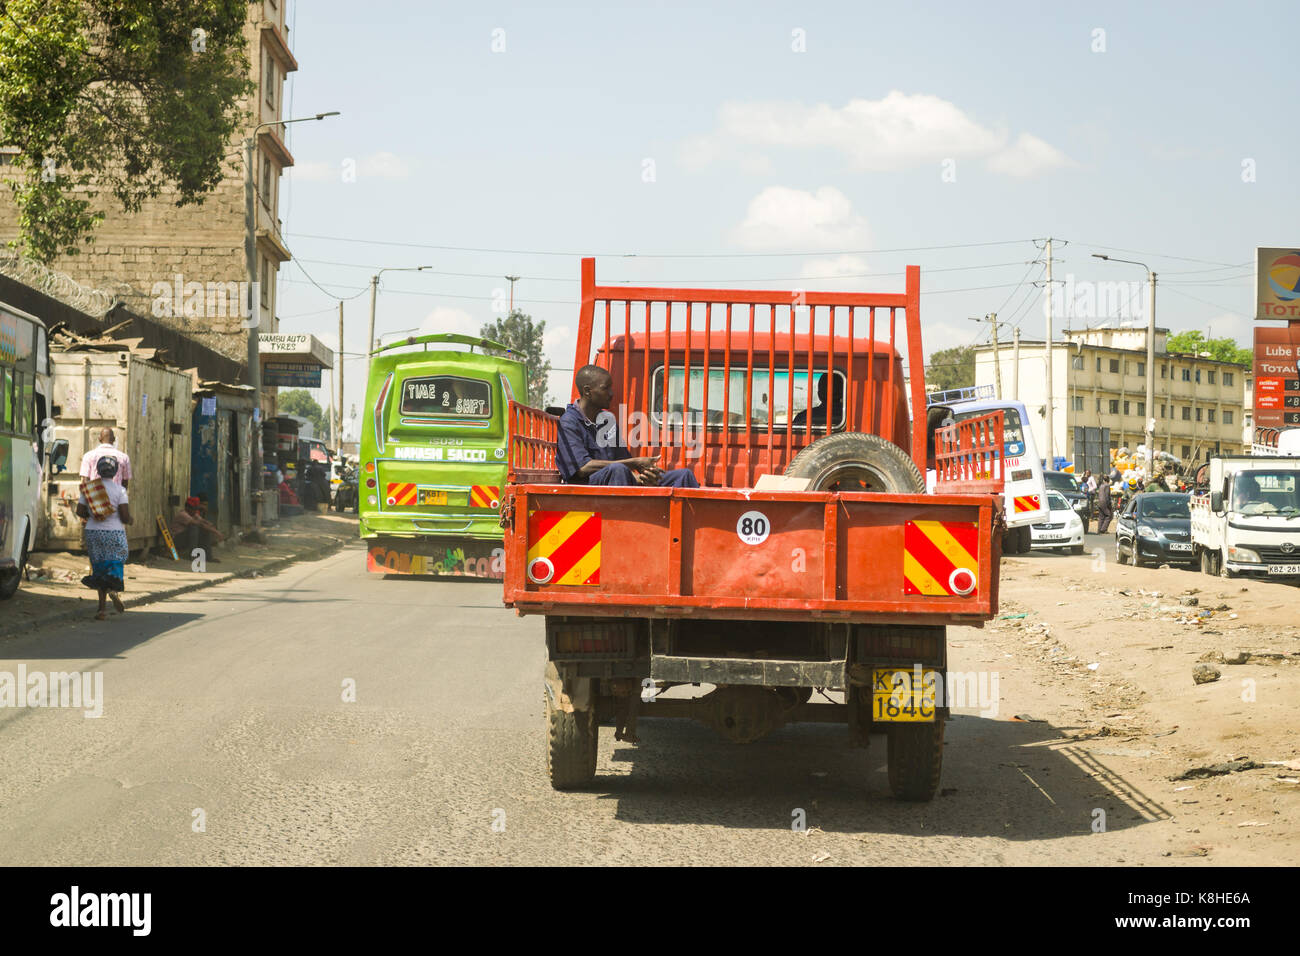 Uomo si siede nel retro del piccolo Aprire carrello come esso trascina lungo la strada con altri veicoli di, Nairobi, Kenia Foto Stock